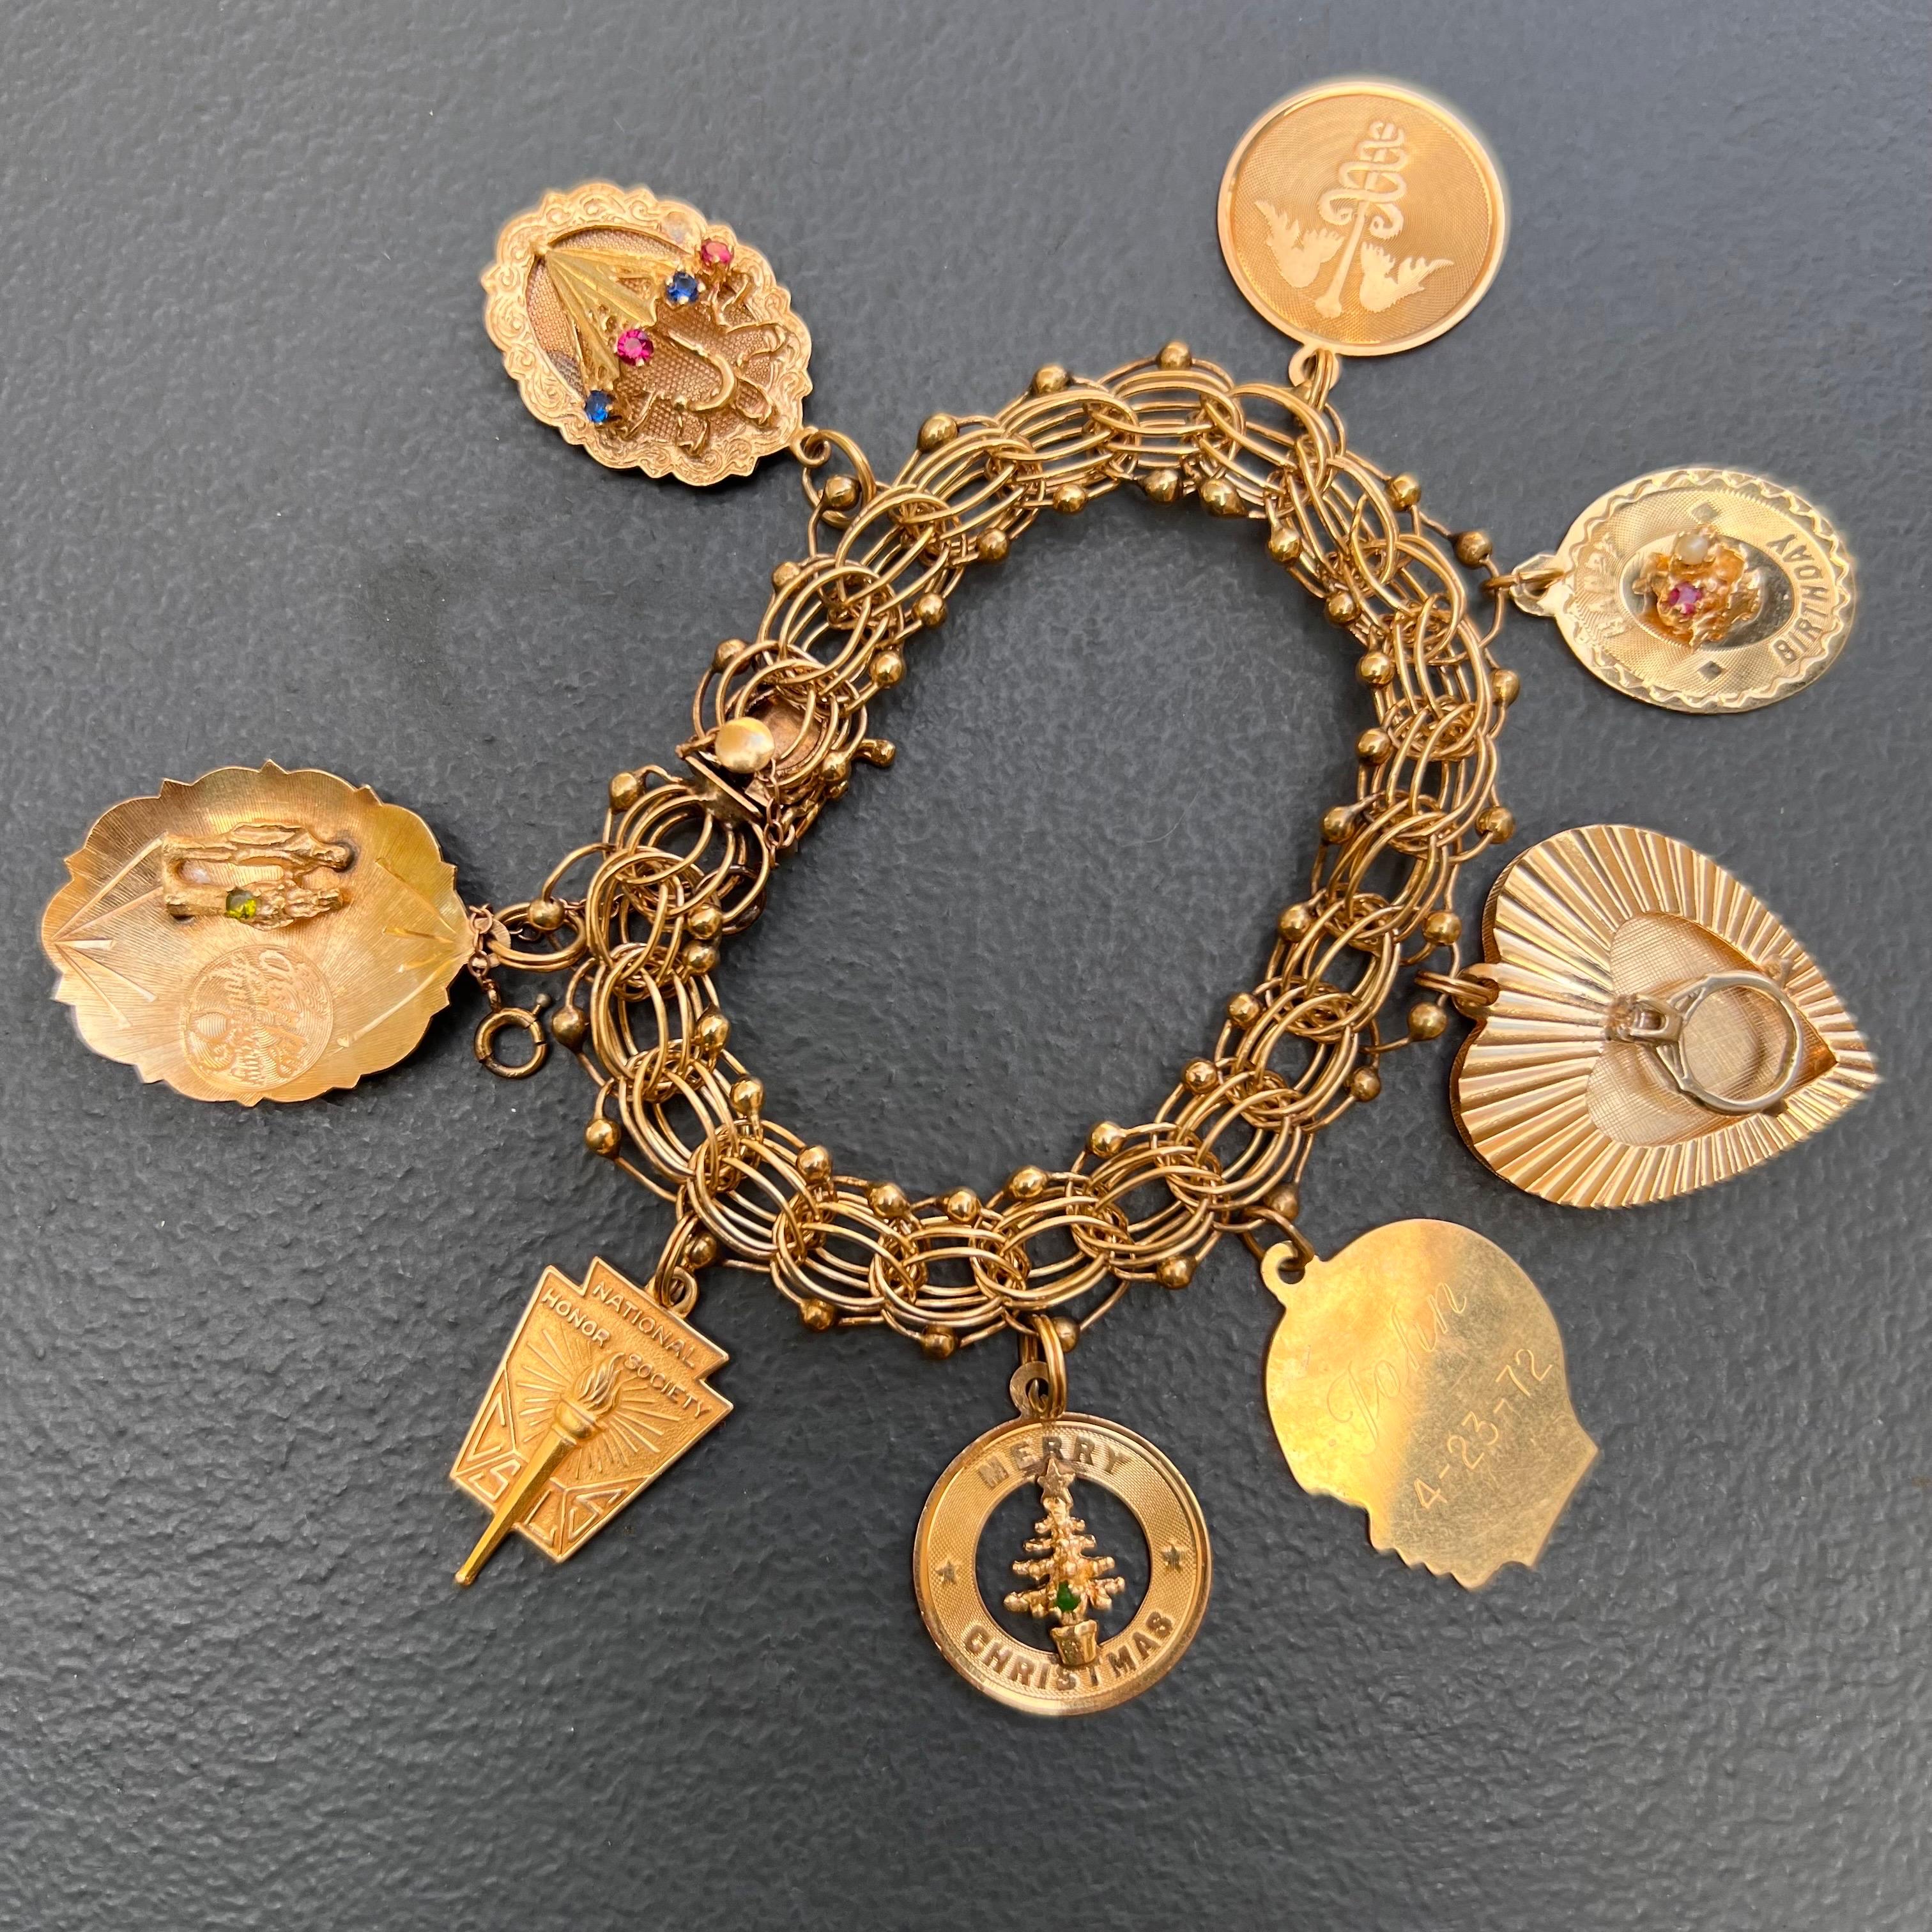 Vintage Retro 1960's 14kt solid yellow old charm bracelet . Le bracelet comporte 8 charmes attachés à une large chaîne à double maillons avec un fermoir à languette et à boîte avec une double chaîne de sécurité.
Marqué et testé pour l'or